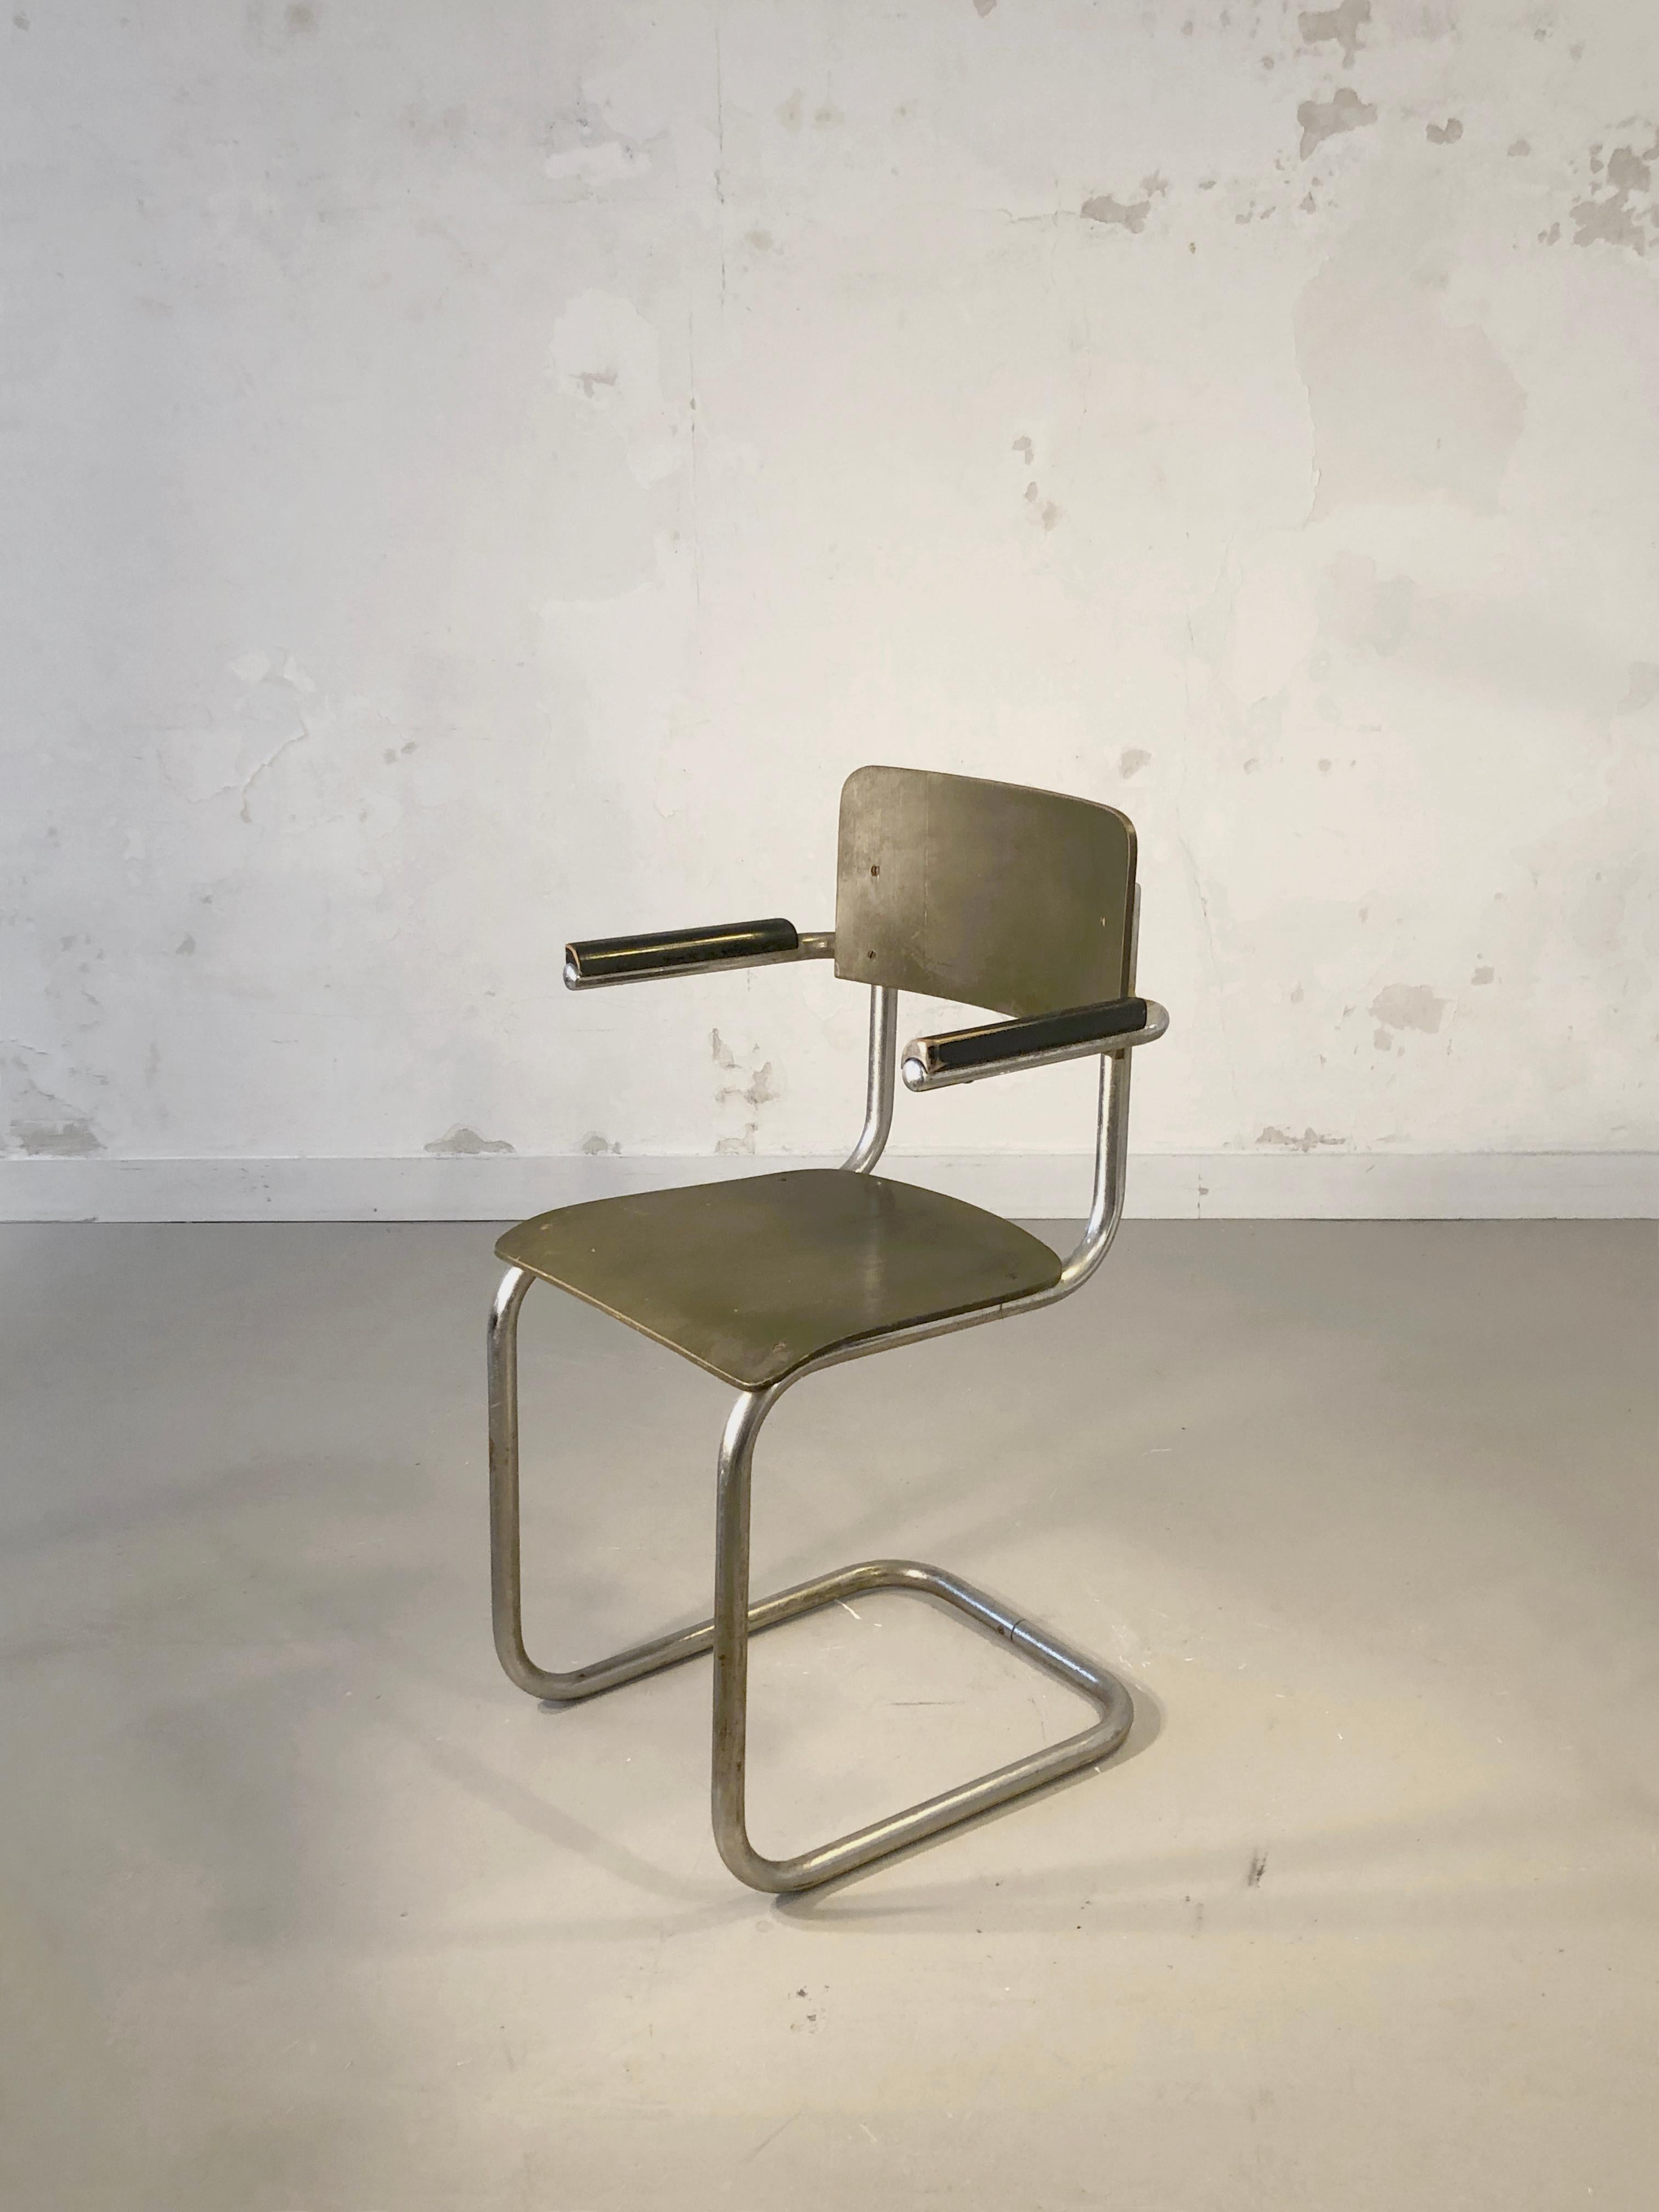 Une chaise emblématique du Bauhaus : structure métallique tubulaire, assise et dossier en contreplaqué laqué noir et kaki, modèle 